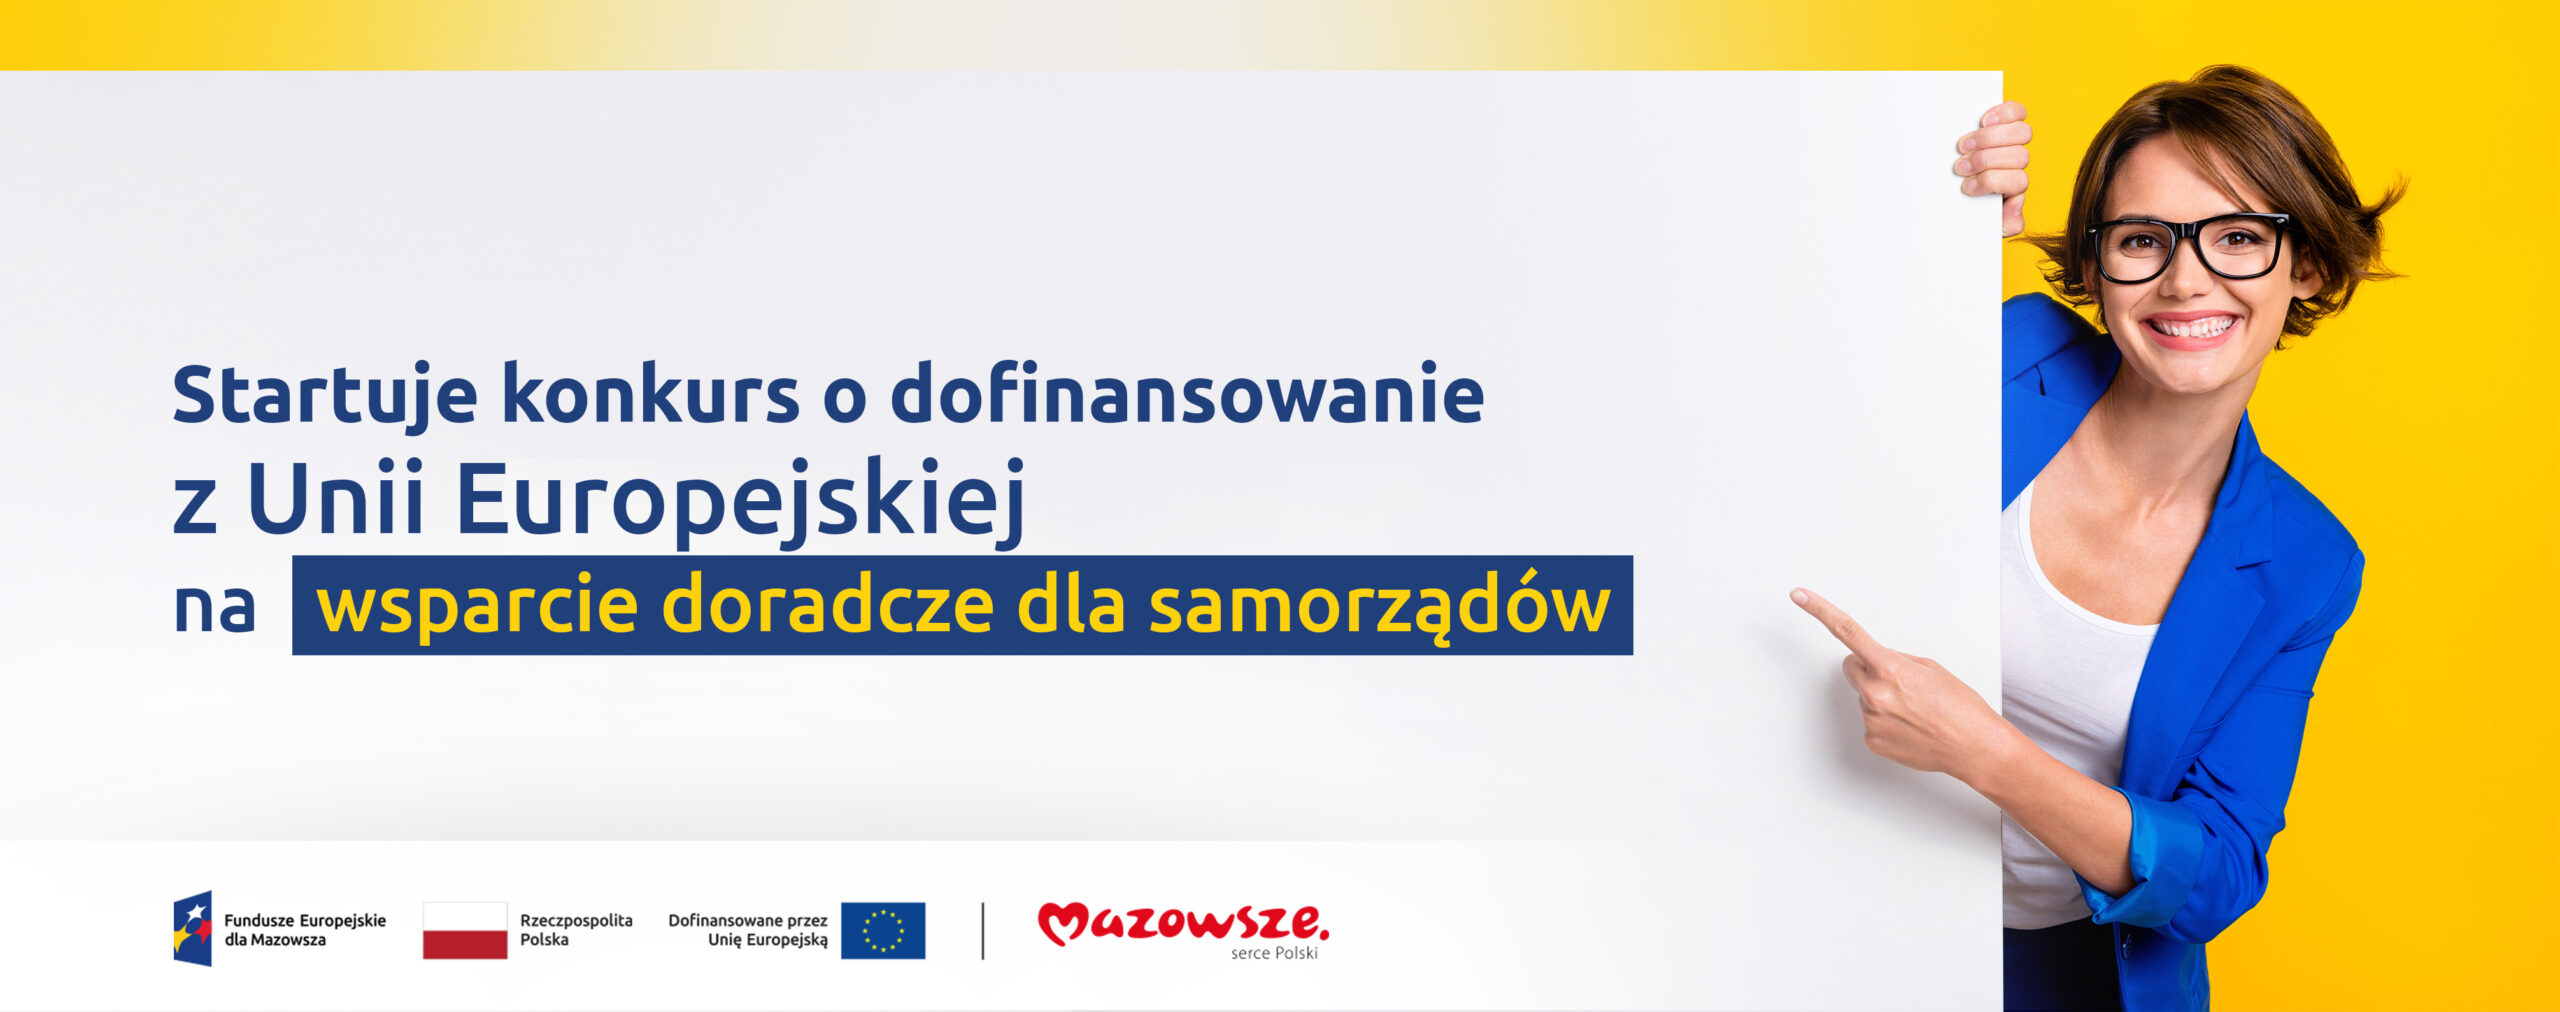 Na grafice znajduje się hasło: Startuje konkurs o dofinansowanie z Unii Europejskiej na wsparcie doradcze dla samorządów. Obok zdjęcie uśmiechniętej kobiety wskazującej dłonią na hasło. 